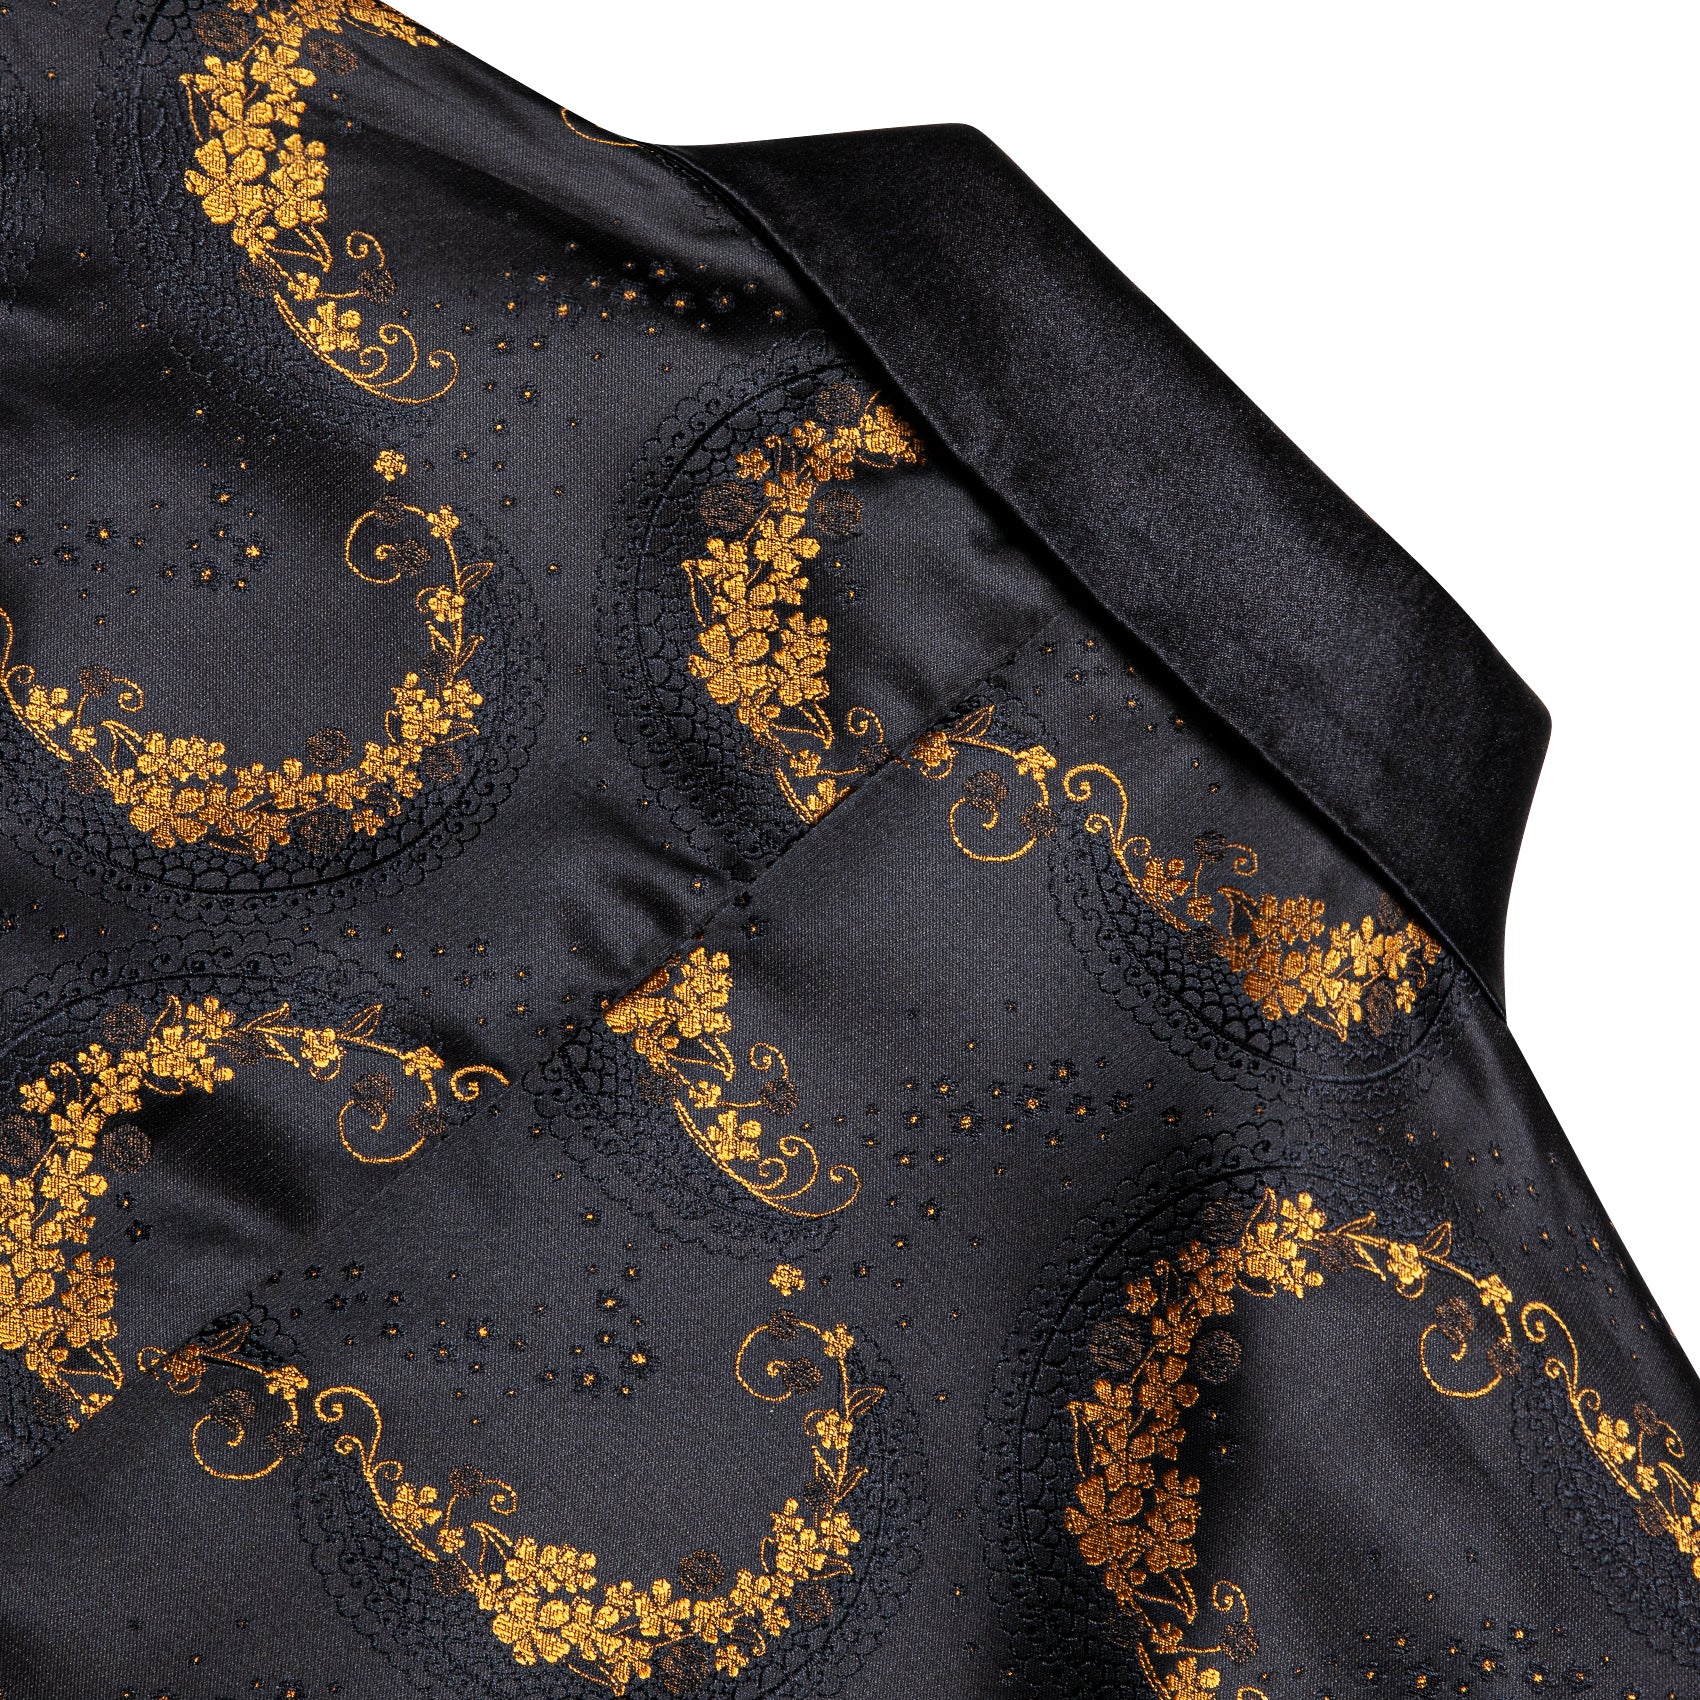 Barry.wang Men's Suit Black Gold Floral Notched Collar Suit Jacket Blazer